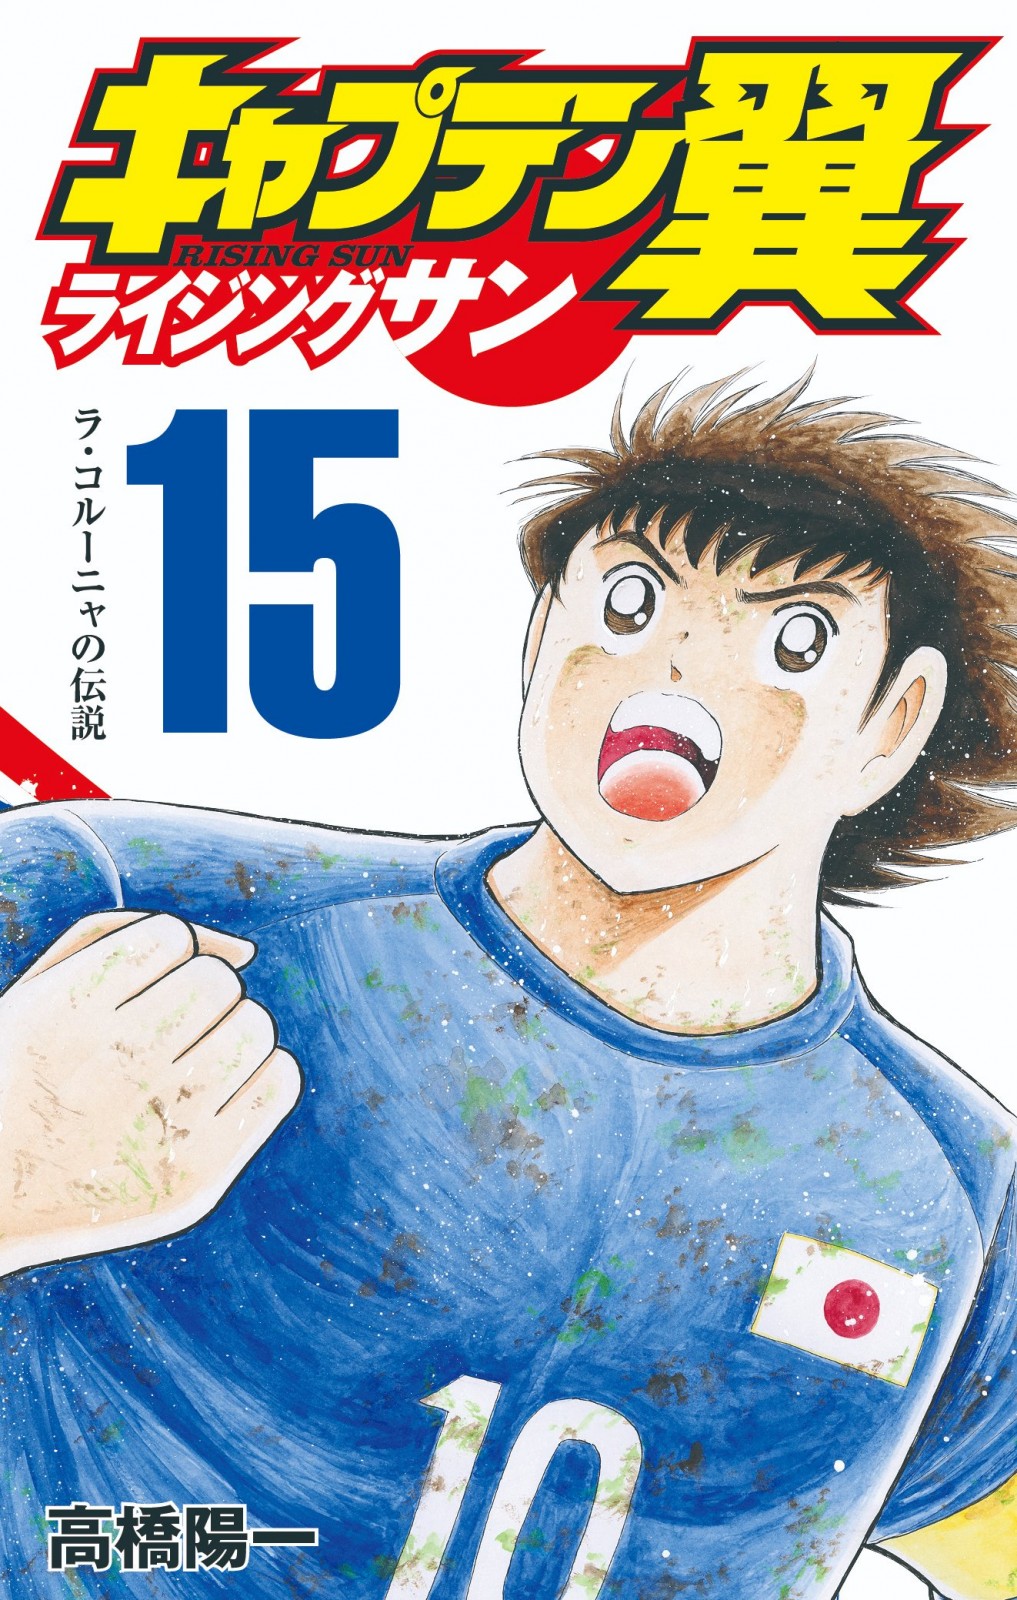 Super Campeones anuncia Manga One-Shot protagonizado por Tom Misaki 1